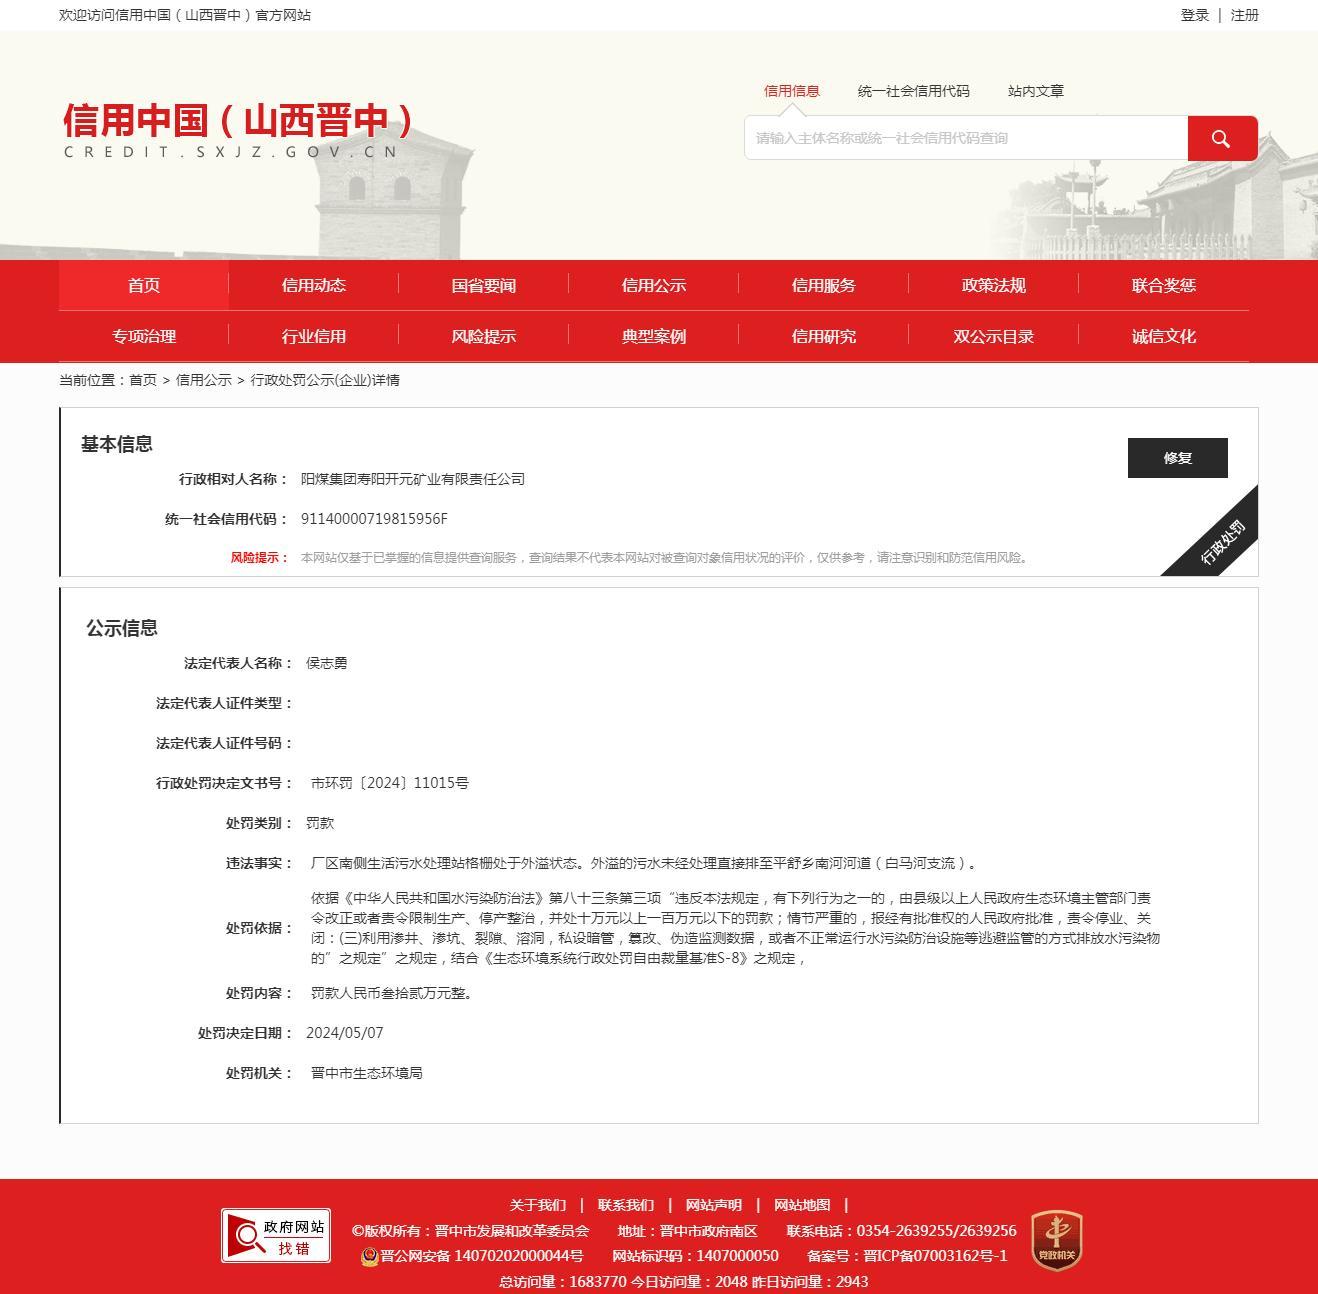 阳煤集团寿阳开元矿业有限责任公司因环境违法被罚32万元